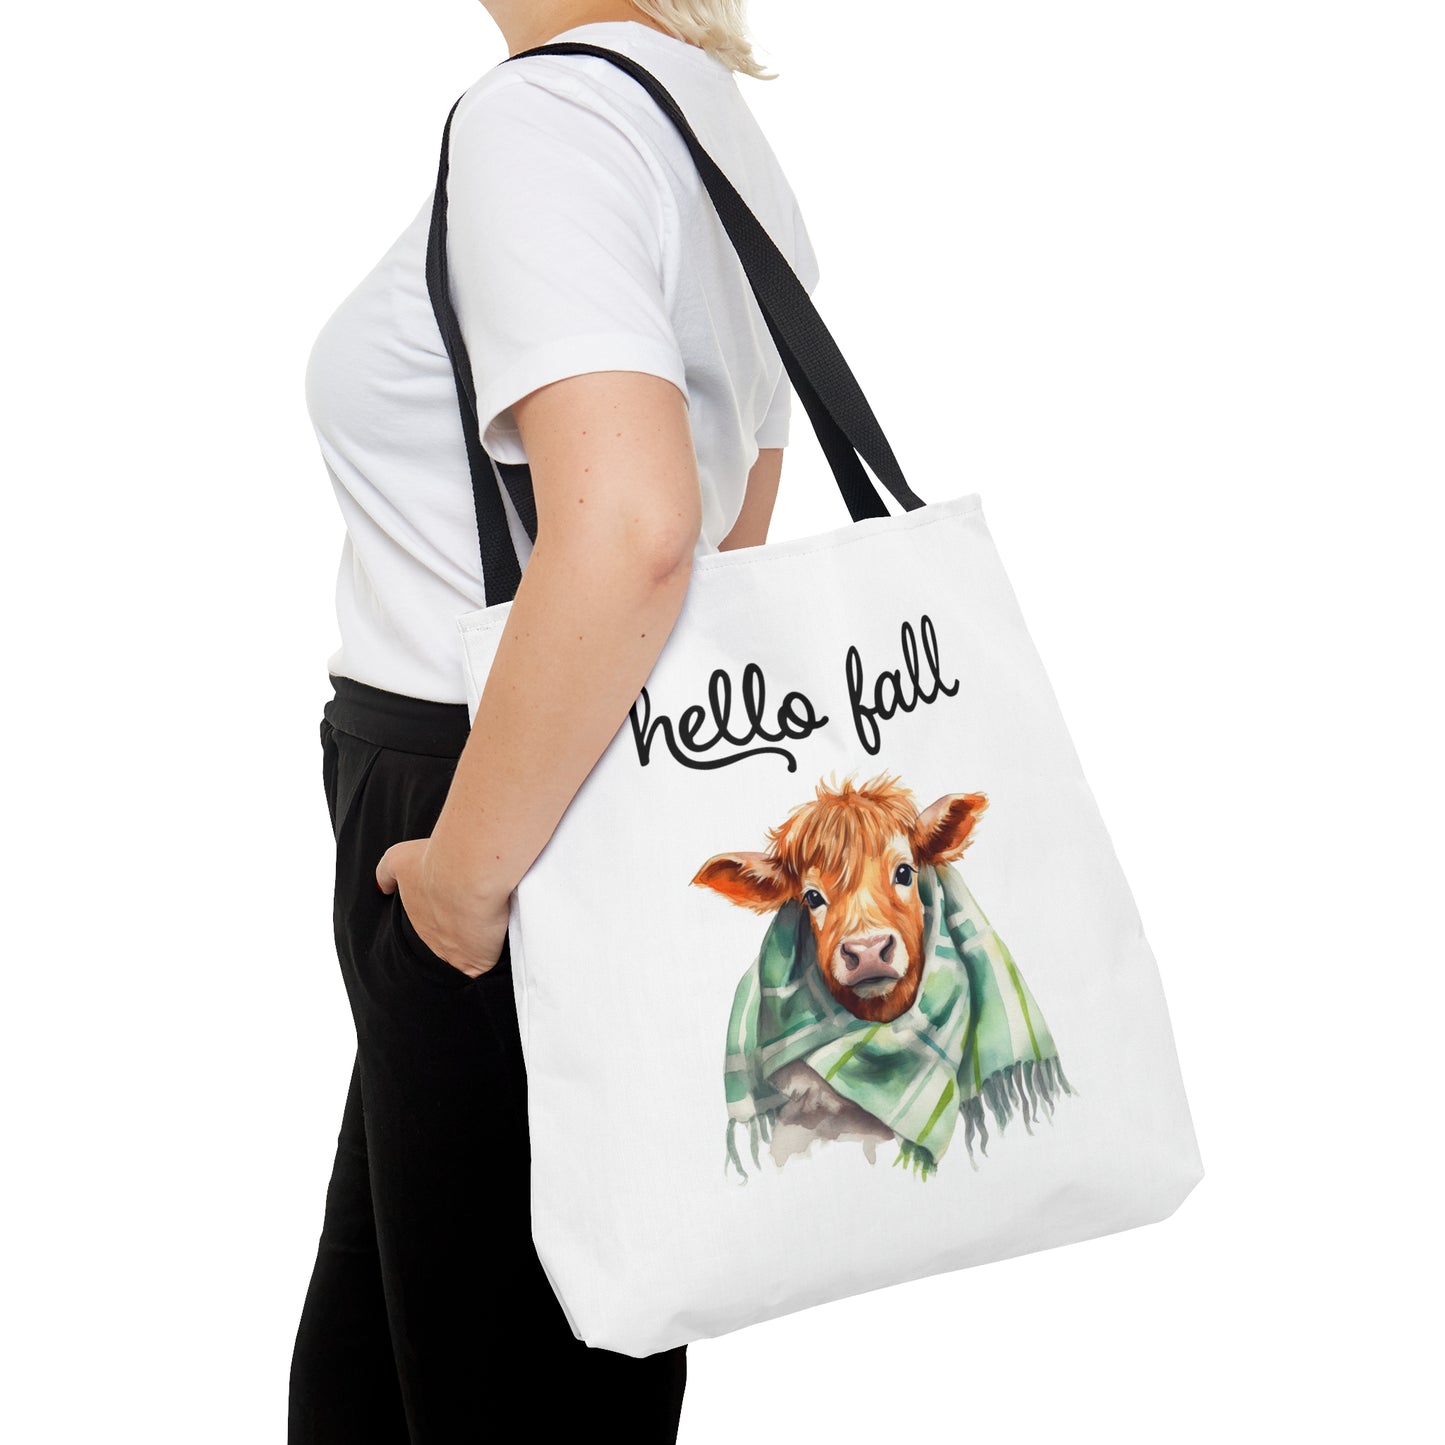 Fall Tote Bag / Highland Cow Bag